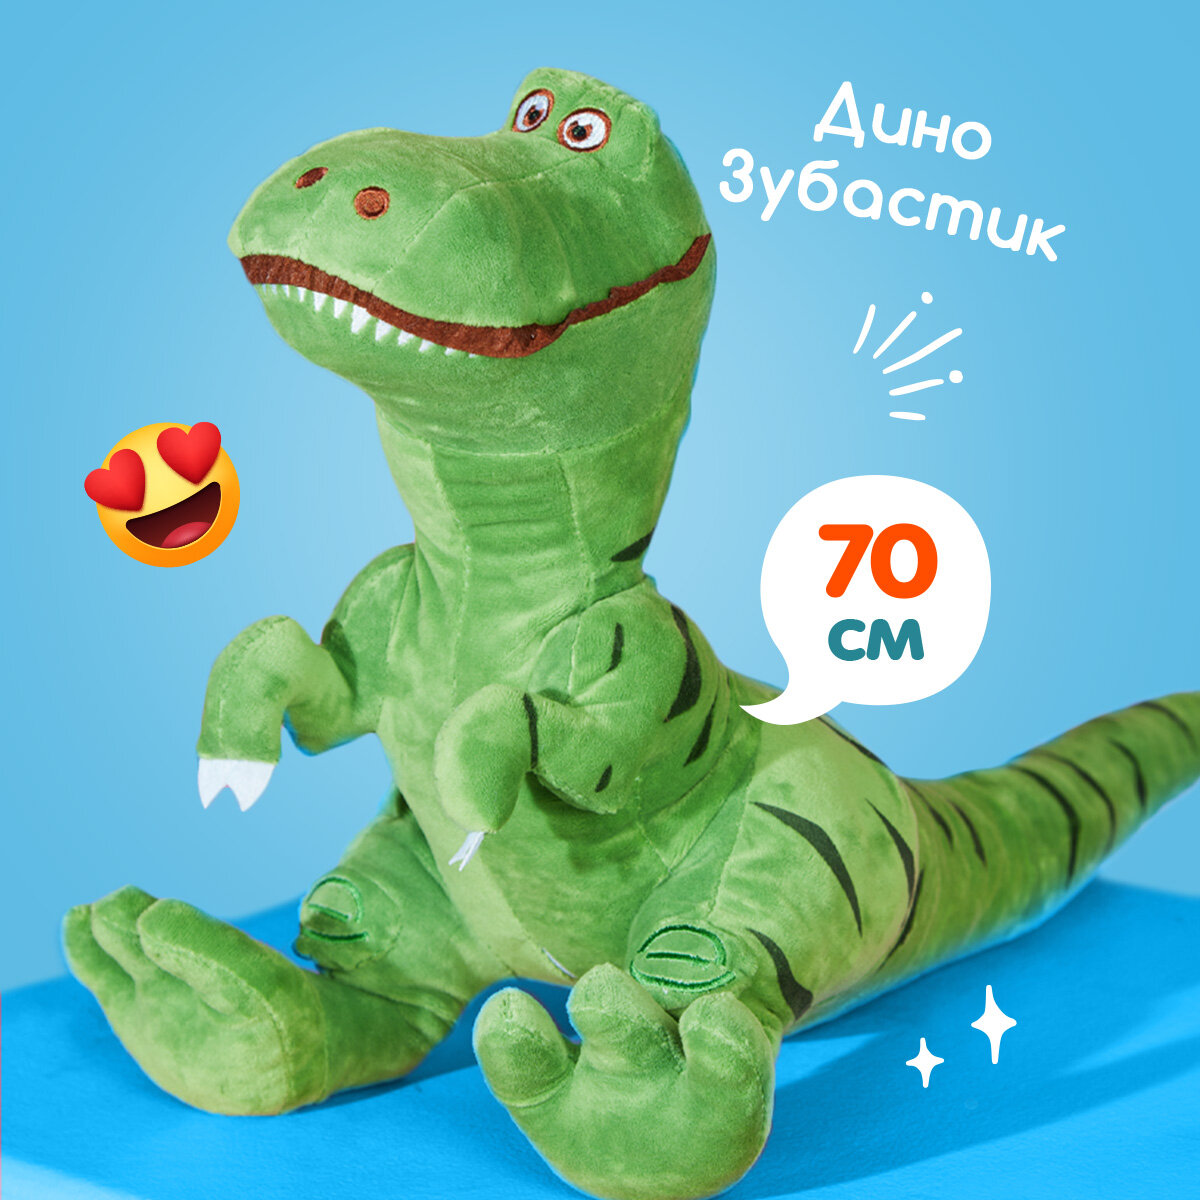 Мягкая игрушка Totty toys Динозавр Рекс икеа 70 см, зеленый